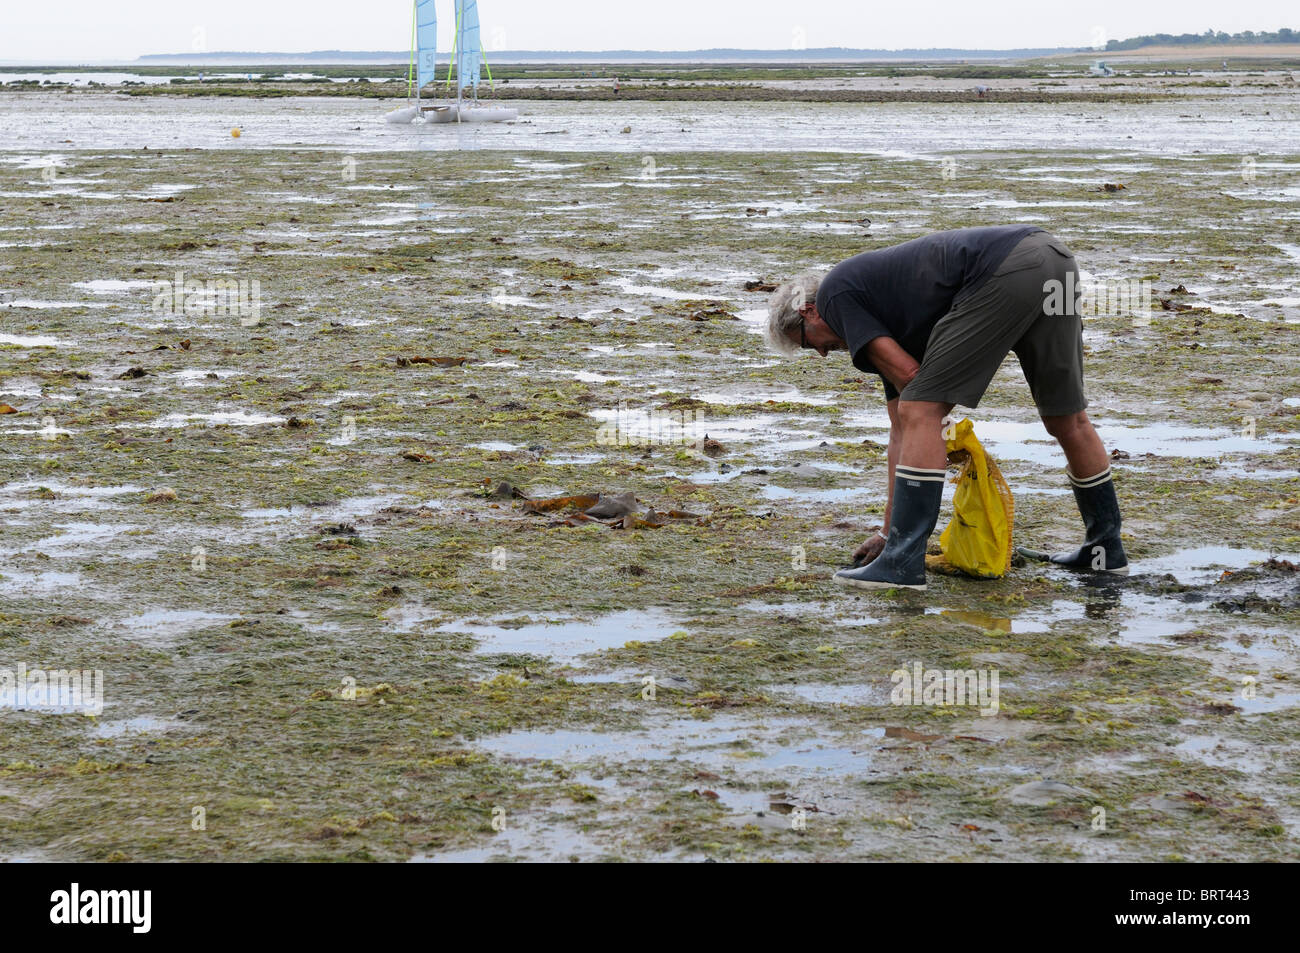 Fotografía de Stock de un hombre recogiendo caracoles de mar en una playa en Ile d'oleron Francia. Foto de stock